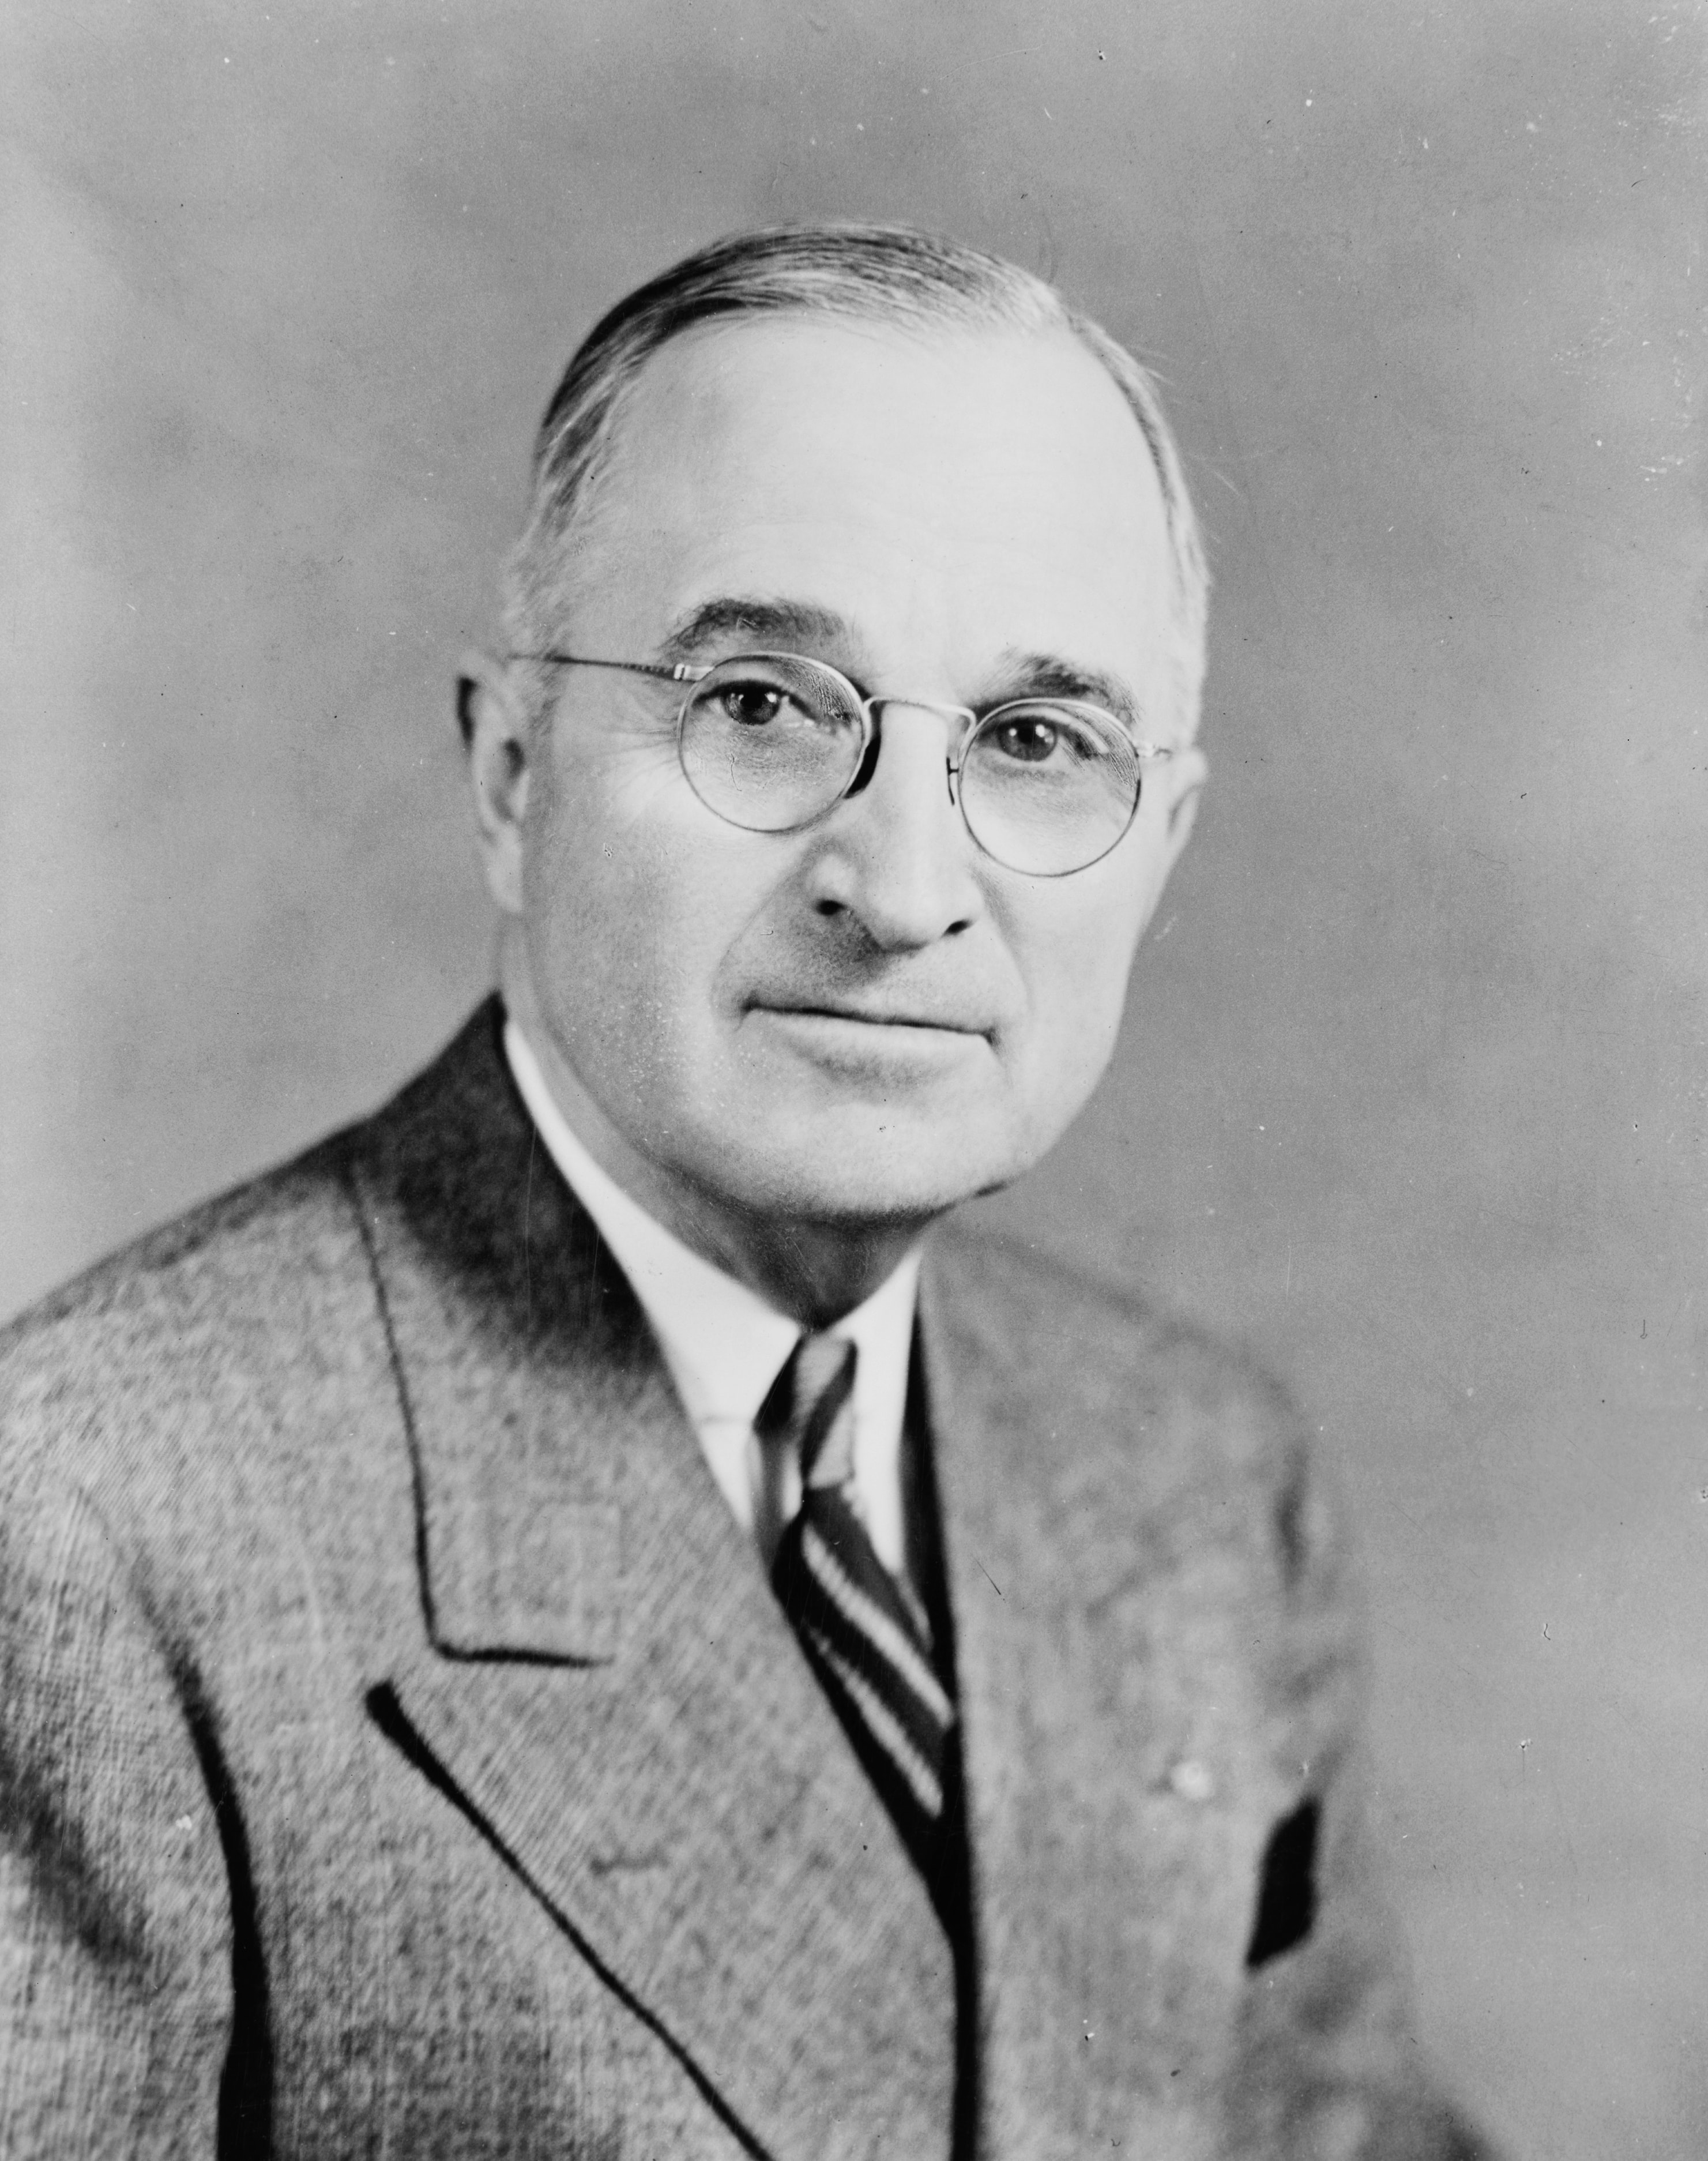   Harry S Truman